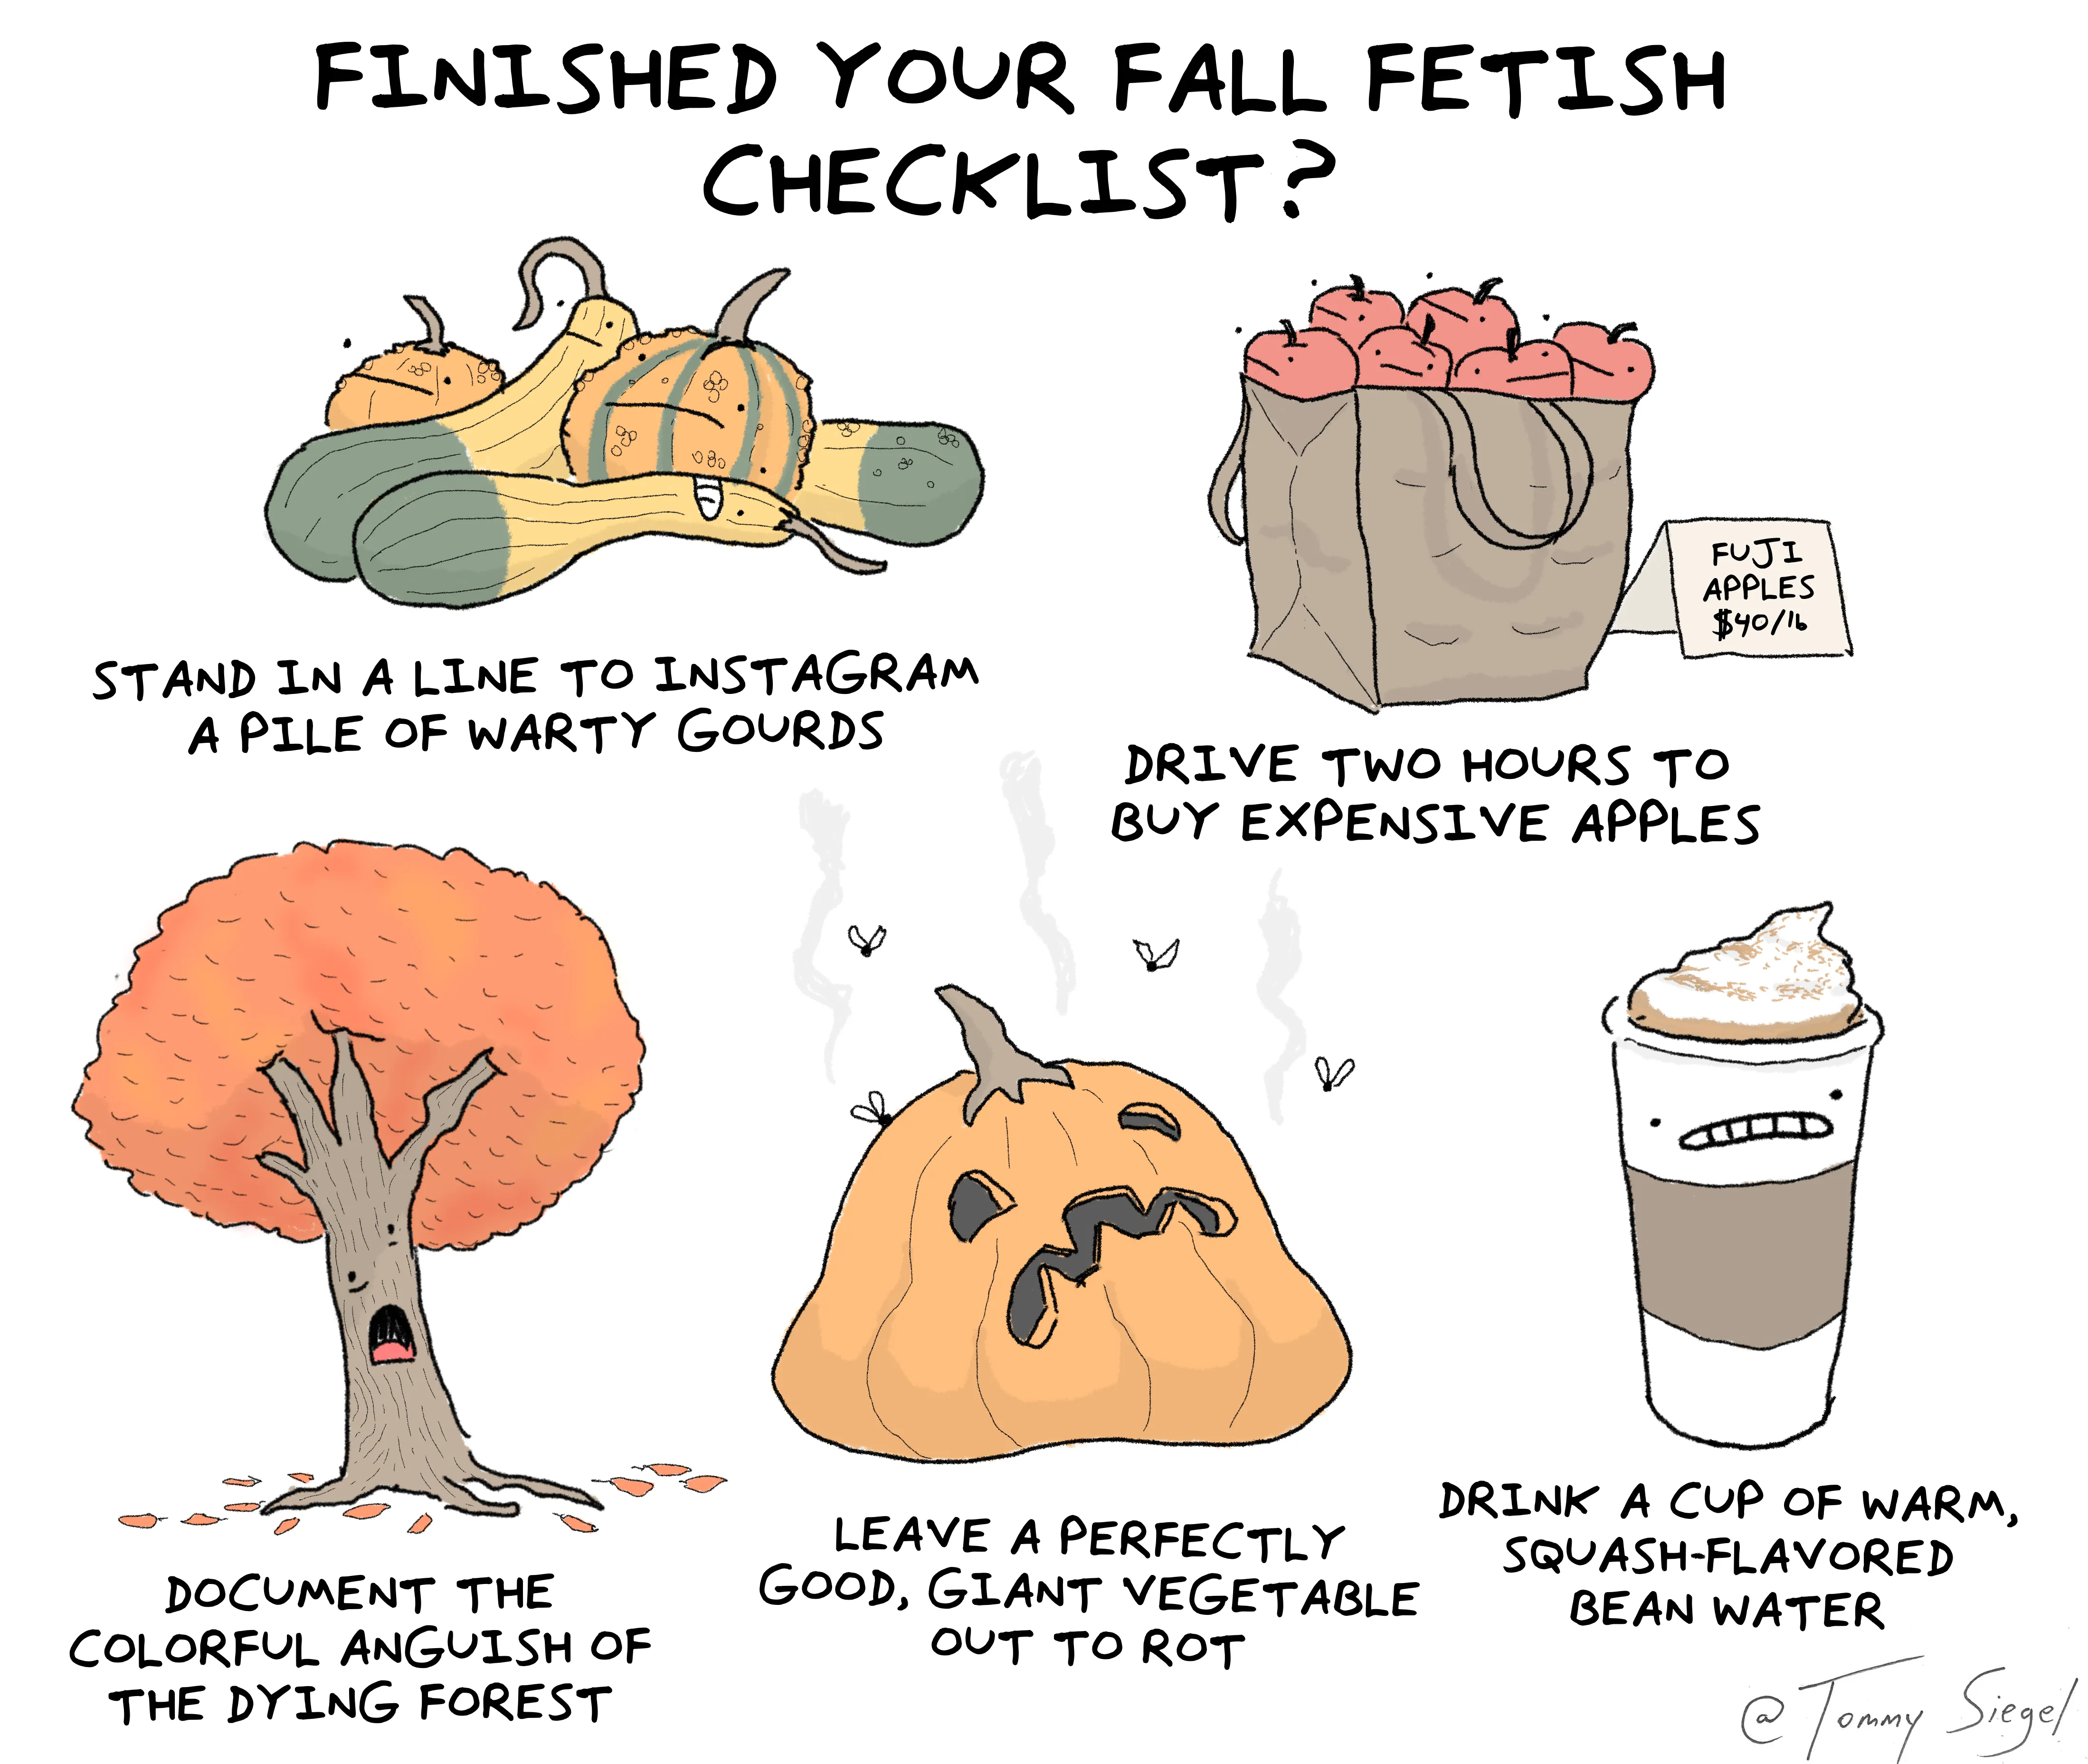 Fall fetish checklist.